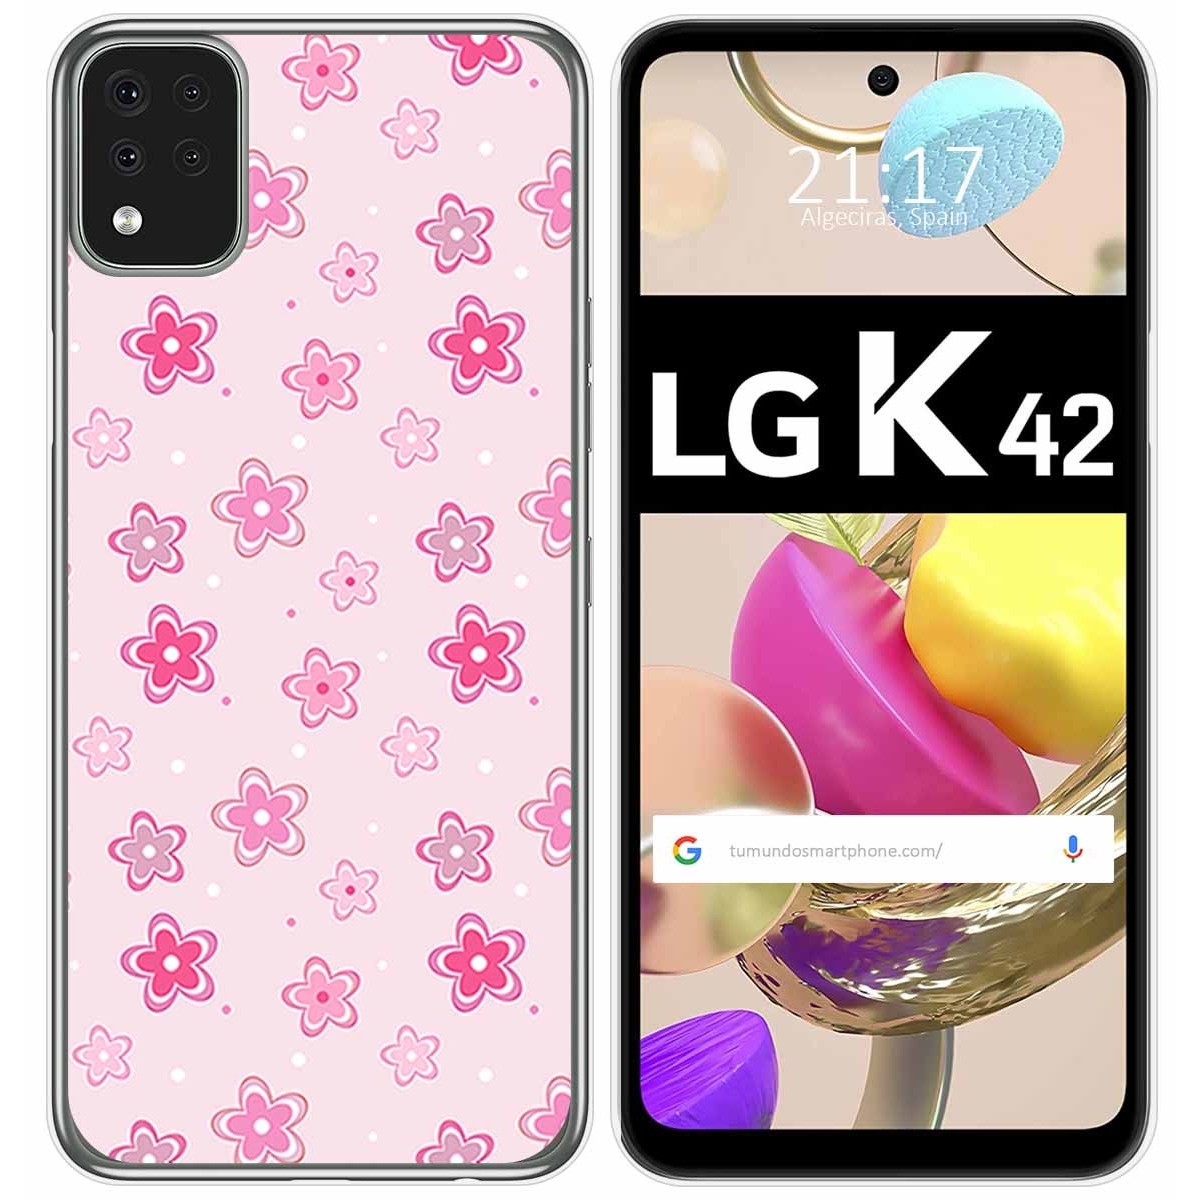 Funda Gel Tpu para LG K42 diseño Flores Dibujos